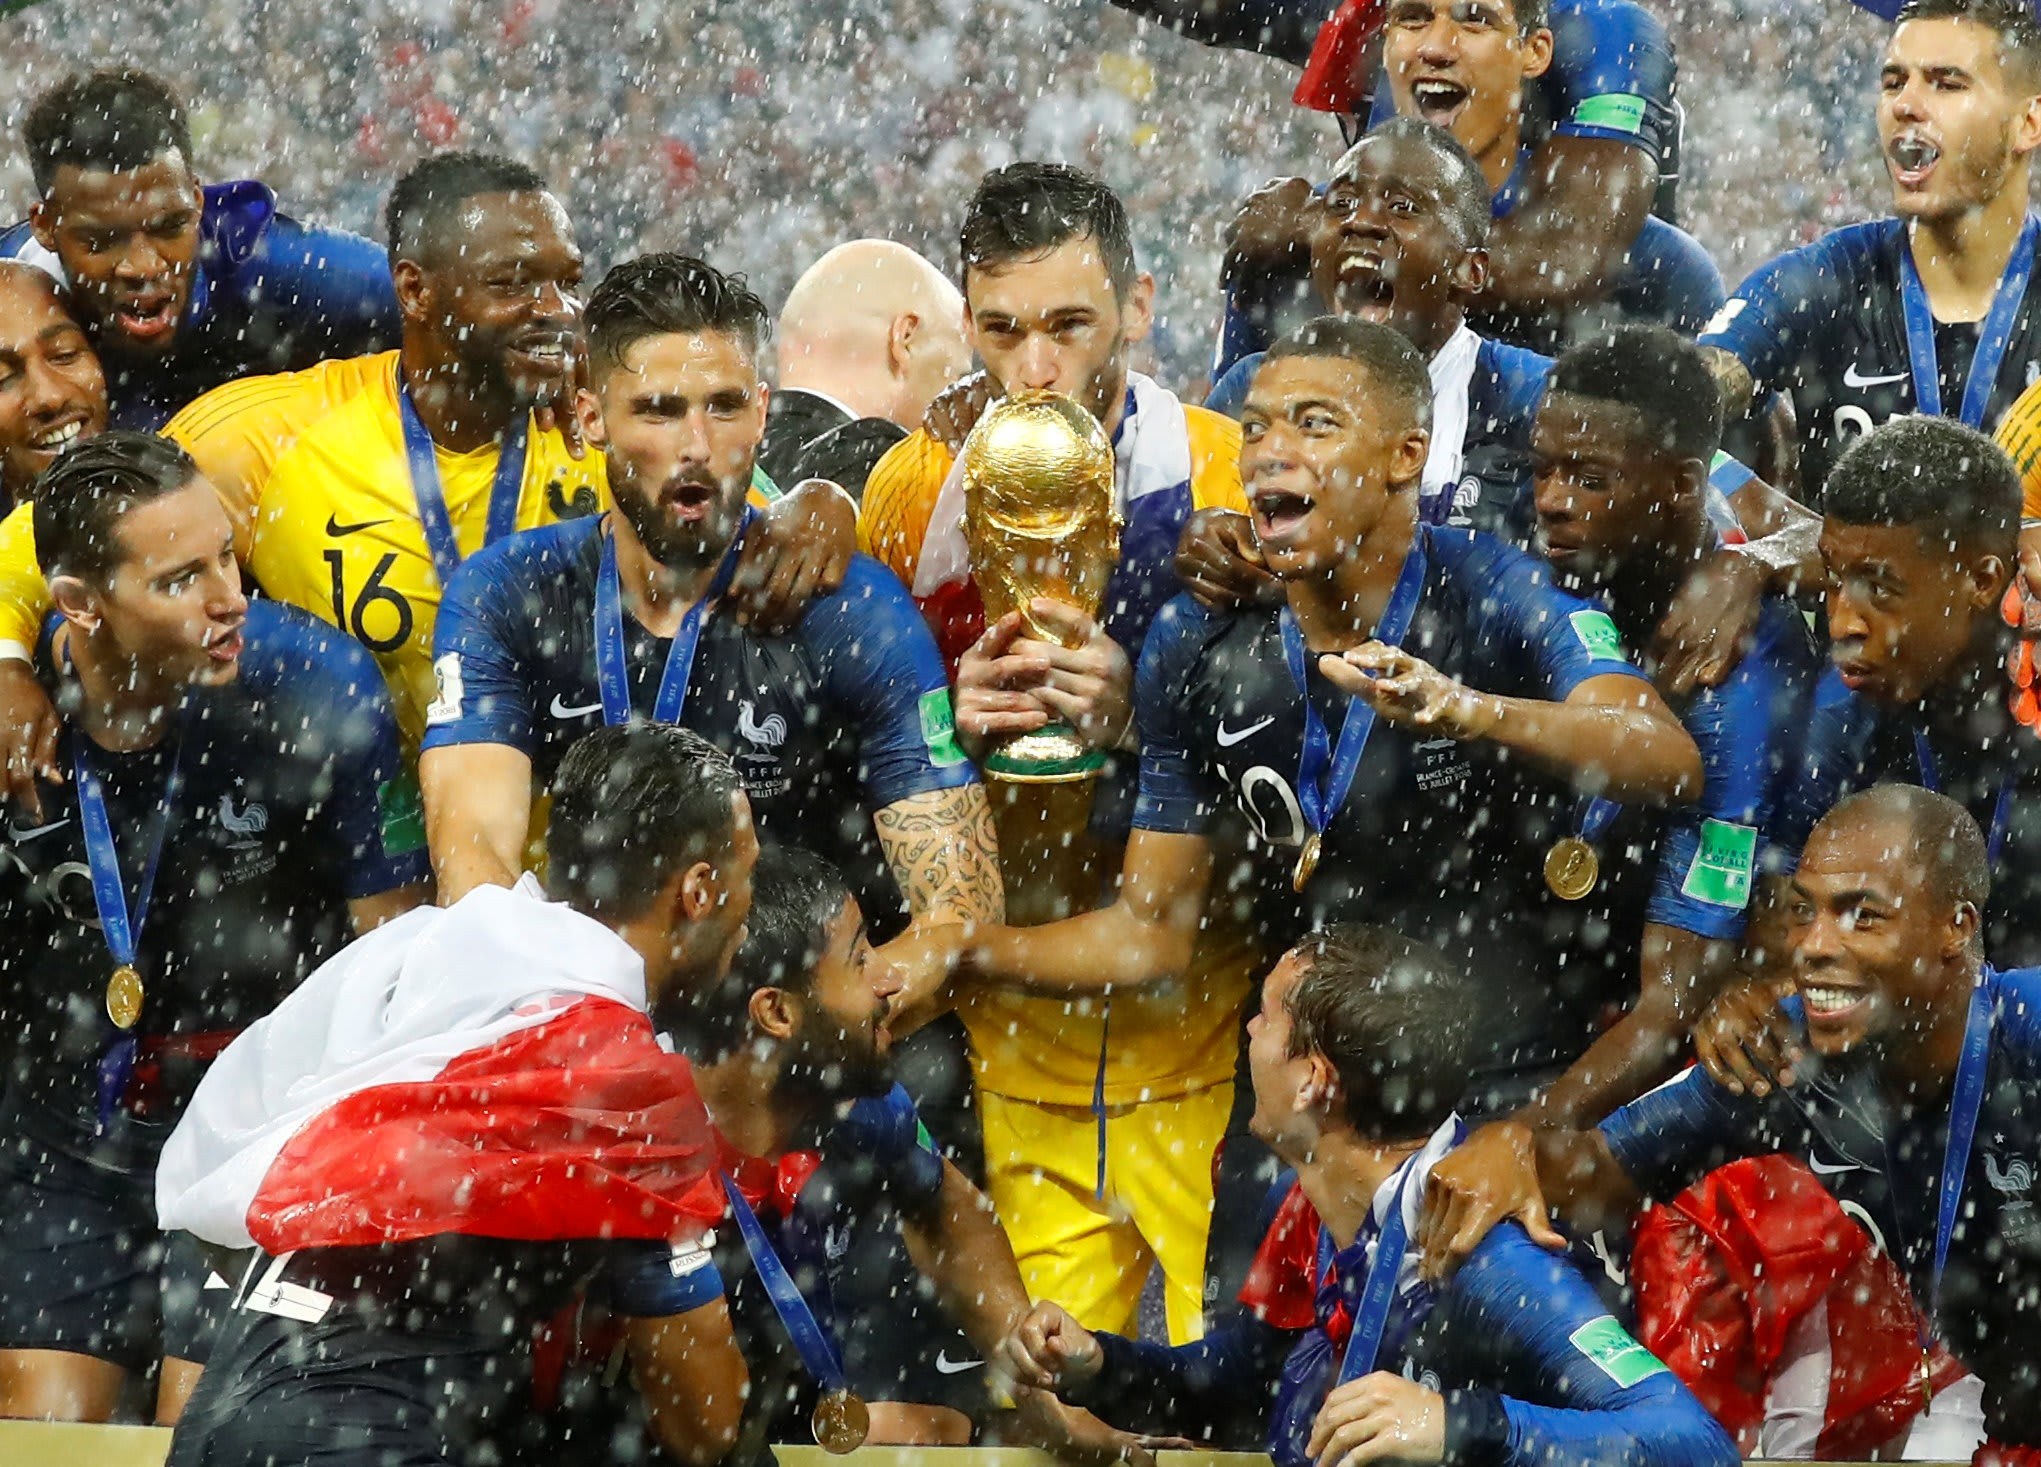 הוגו לוריס קפטן נבחרת צרפת מנשק את גביע העולם, מונדיאל 2018